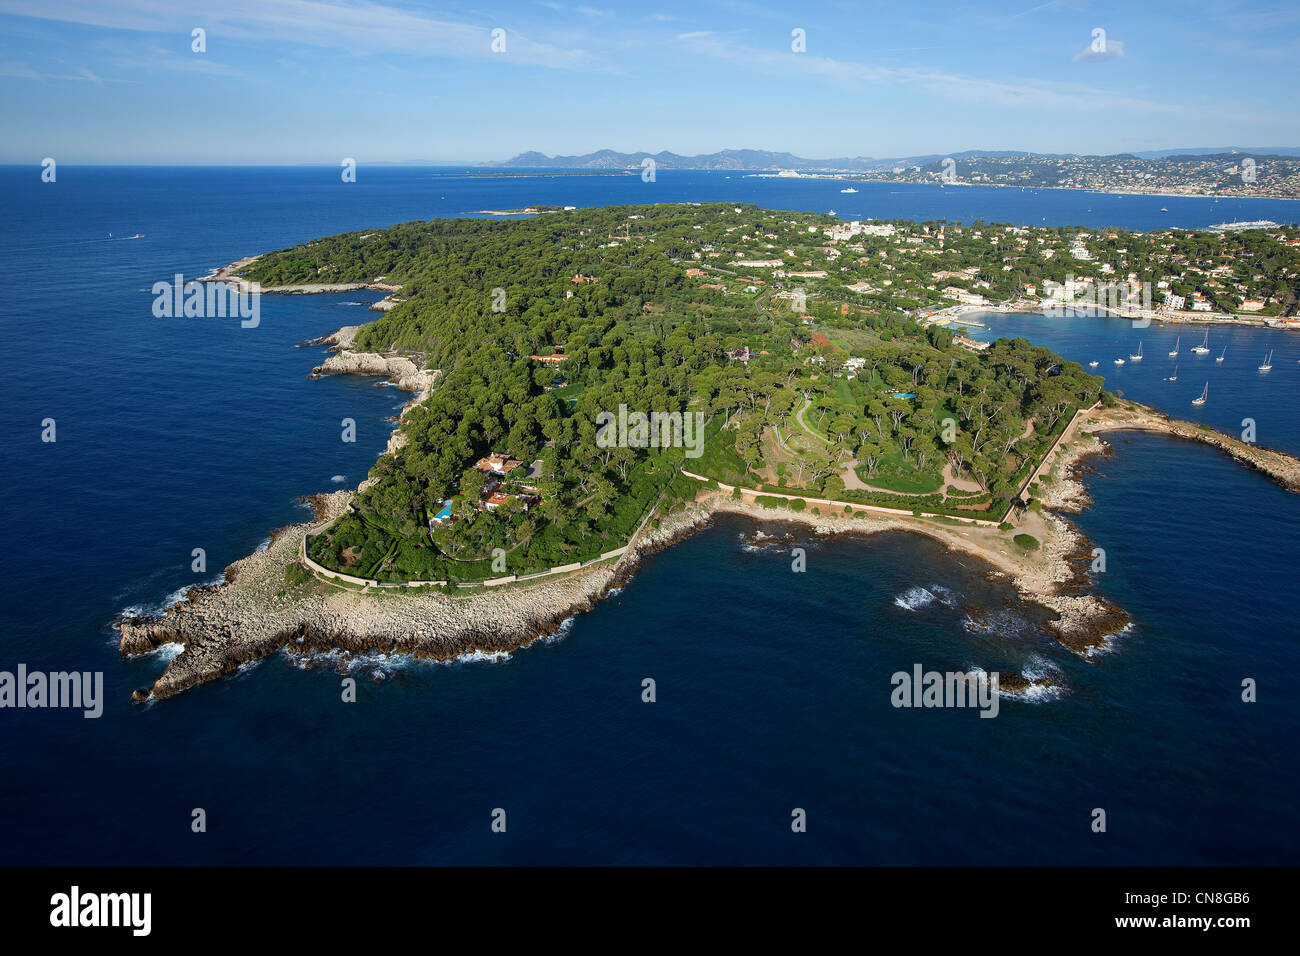 Frankreich, Alpes Maritimes, Antibes, Cap d ' Antibes, Cap Gros, Garoupe  Strand im Hintergrund (Luftbild Stockfotografie - Alamy